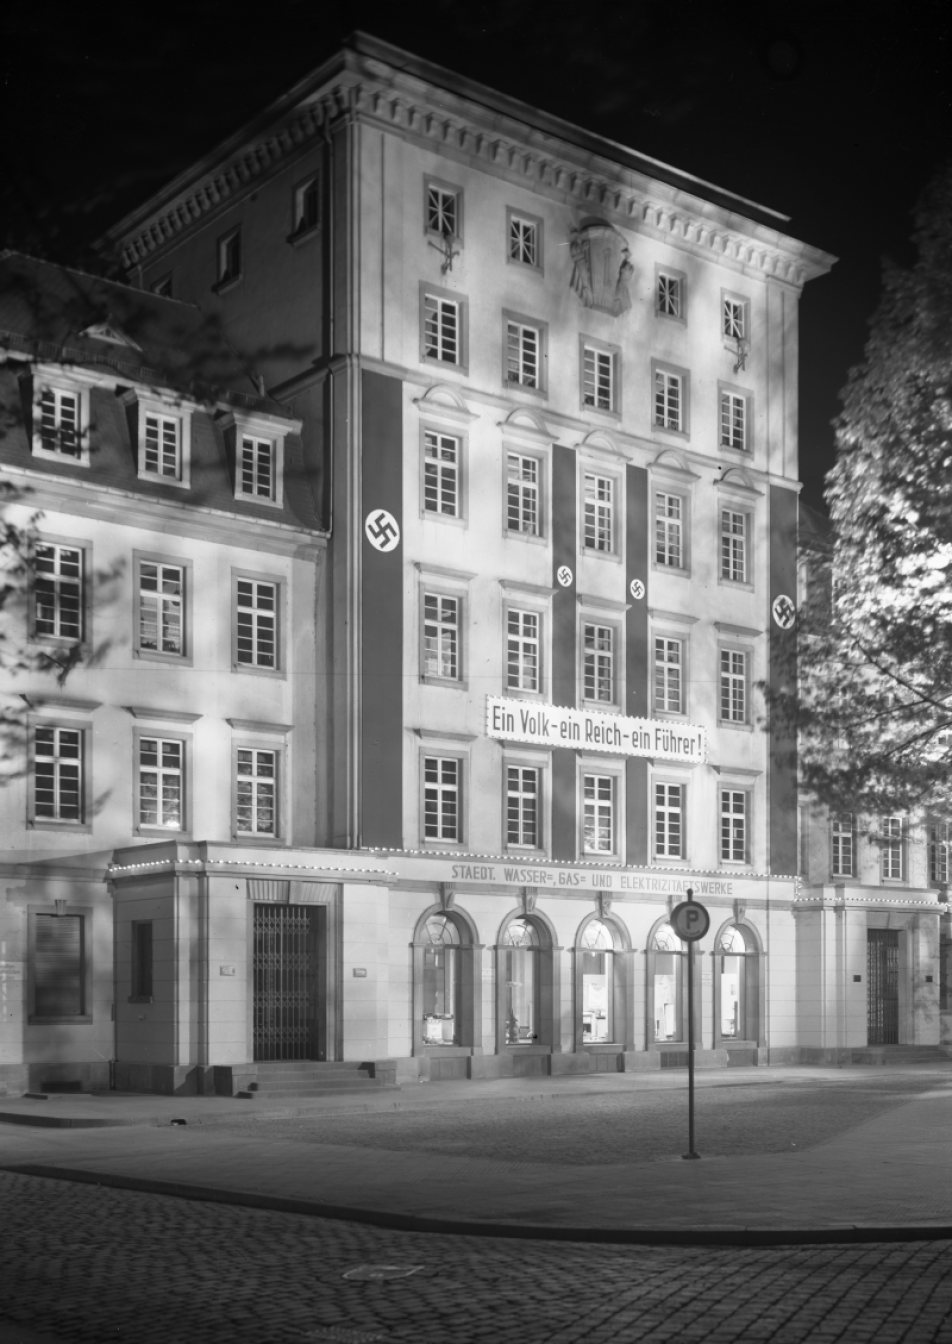 Fotografie in schwarz-weiß zeigt eine beleuchtete Hausfront mit nationalsozialistischen Fahnen bei Nacht